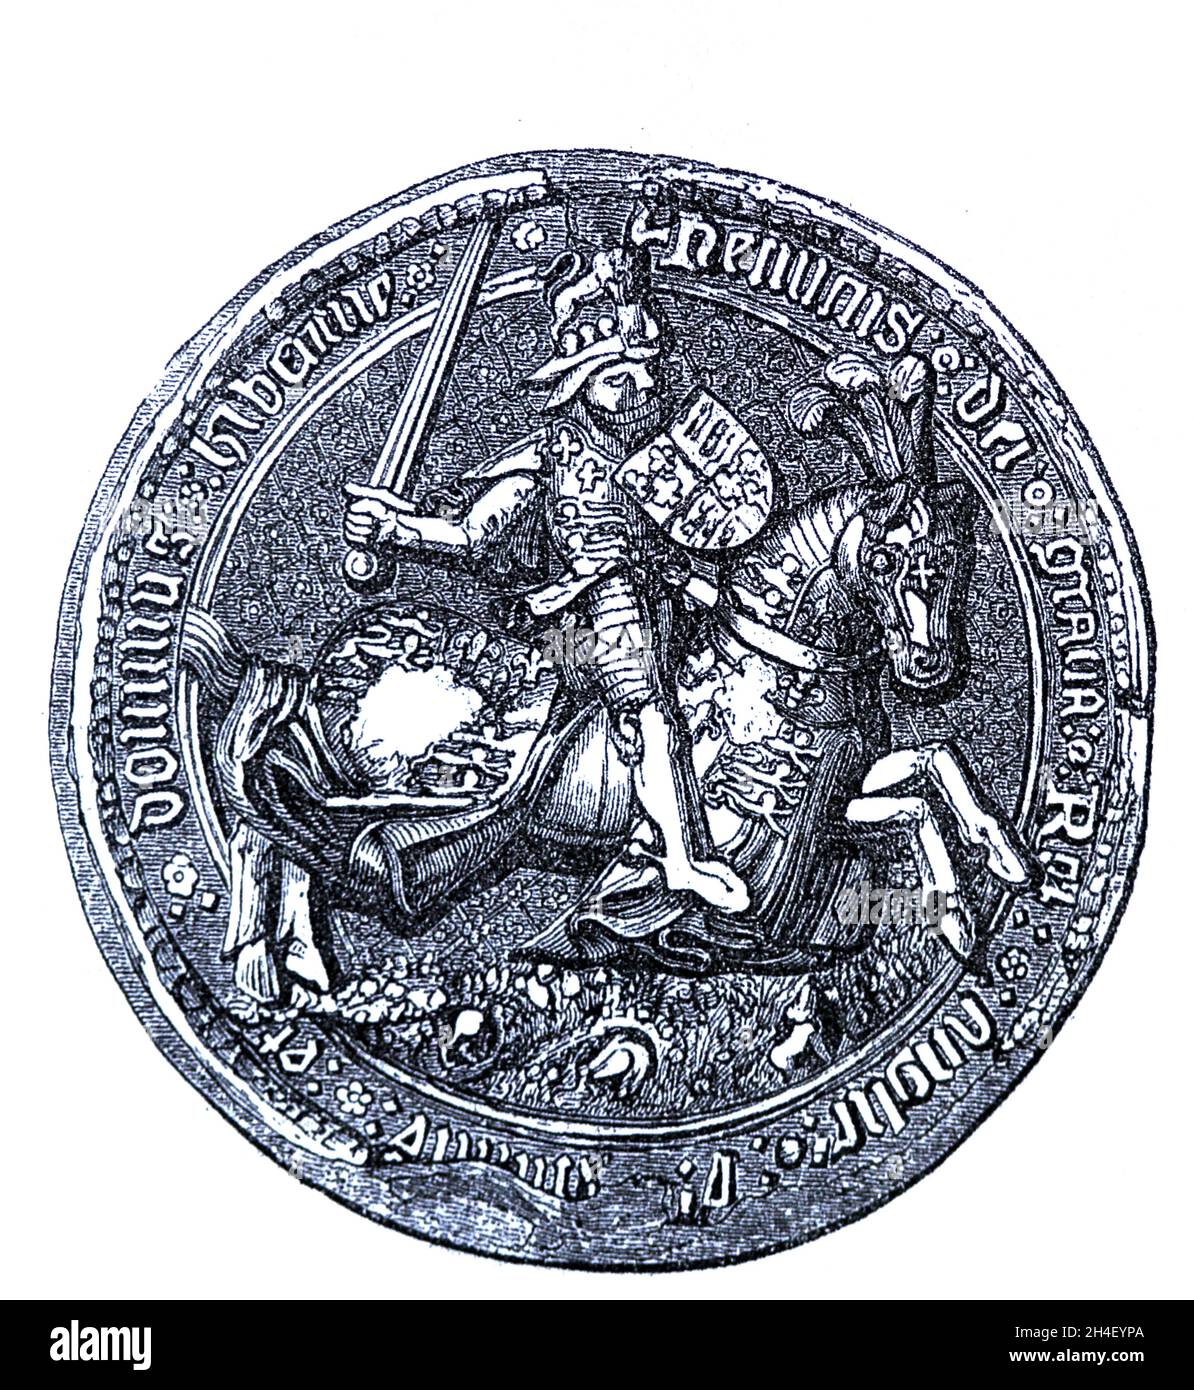 Großes Siegel Heinrichs VII. Von England (1457-1509). Gravur, 19. Jahrhundert. Stockfoto